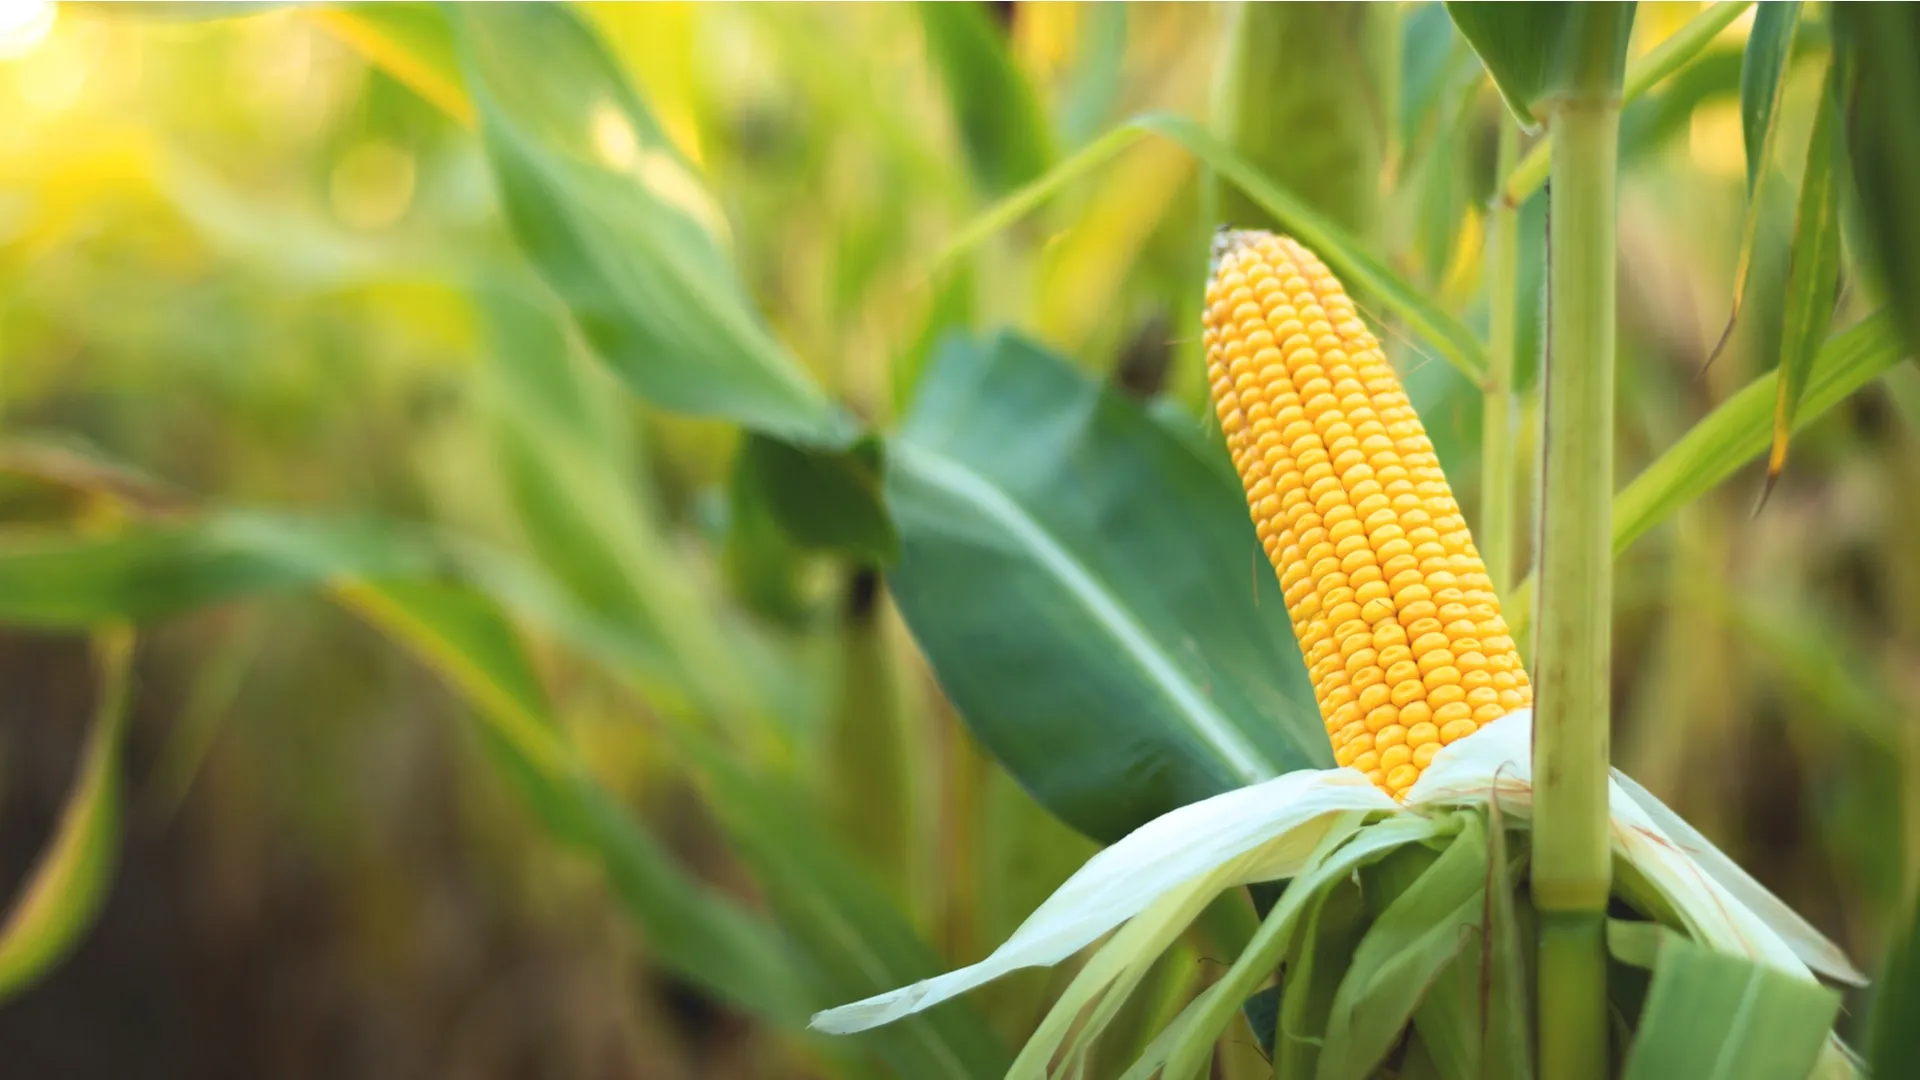 На юге России придумали безотходное производство из кукурузы. Фото: Taras Valerievich / Shutterstock.com